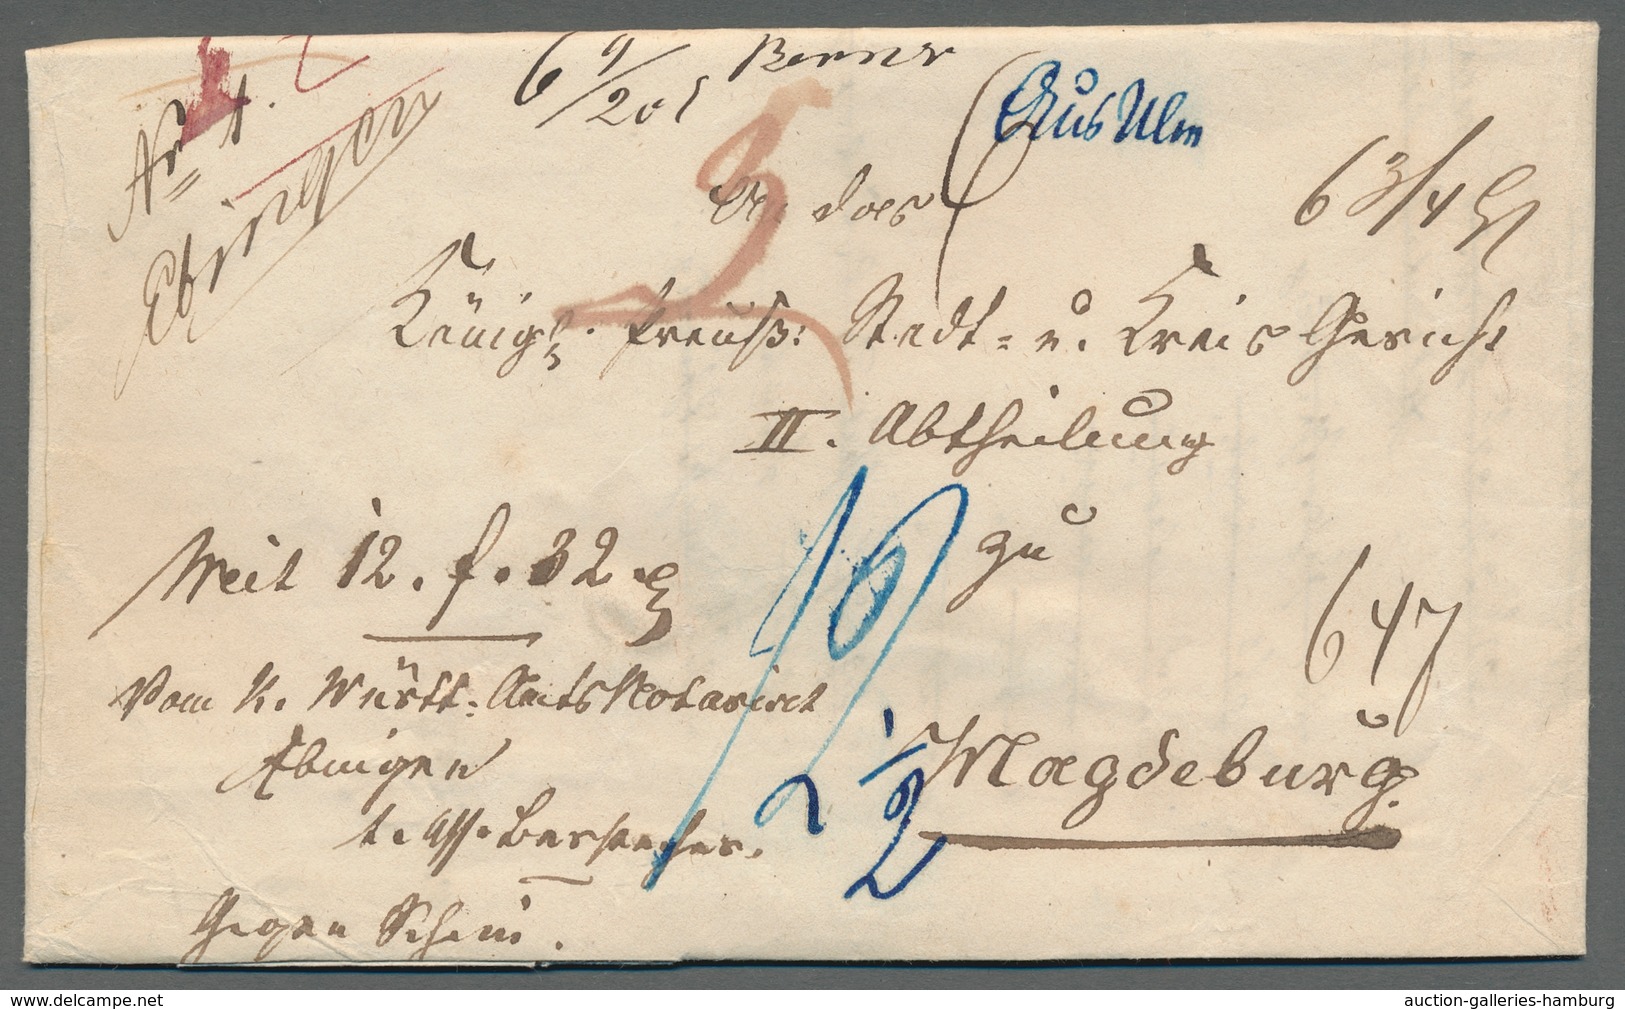 Altdeutschland - Vorphila: 1755-1867, Sammlung von 41 Vorphilabriefen und markenlosen Briefen in ein